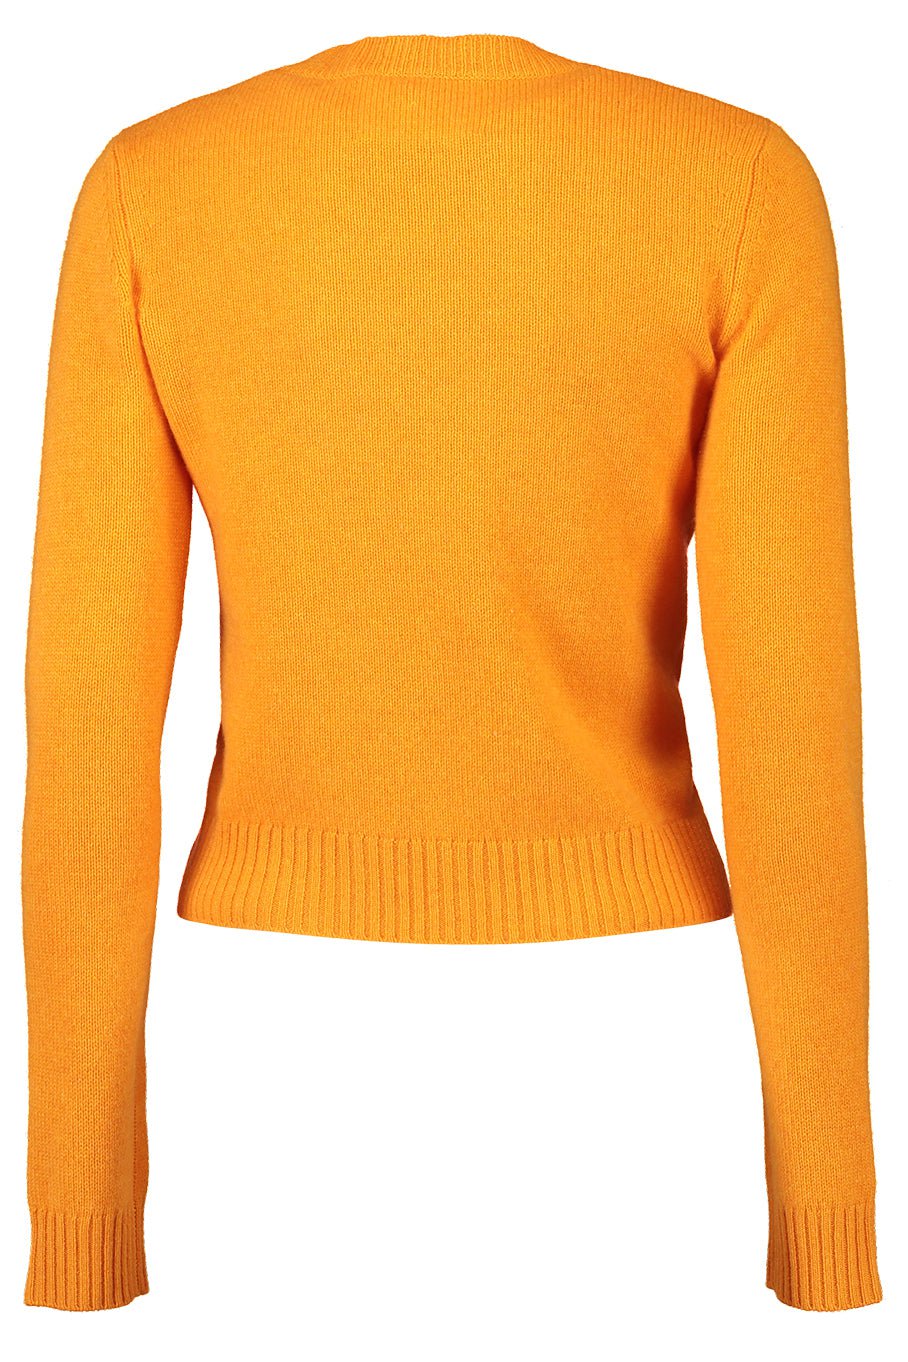 LISA YANG-Mable Sweater - Apricot-